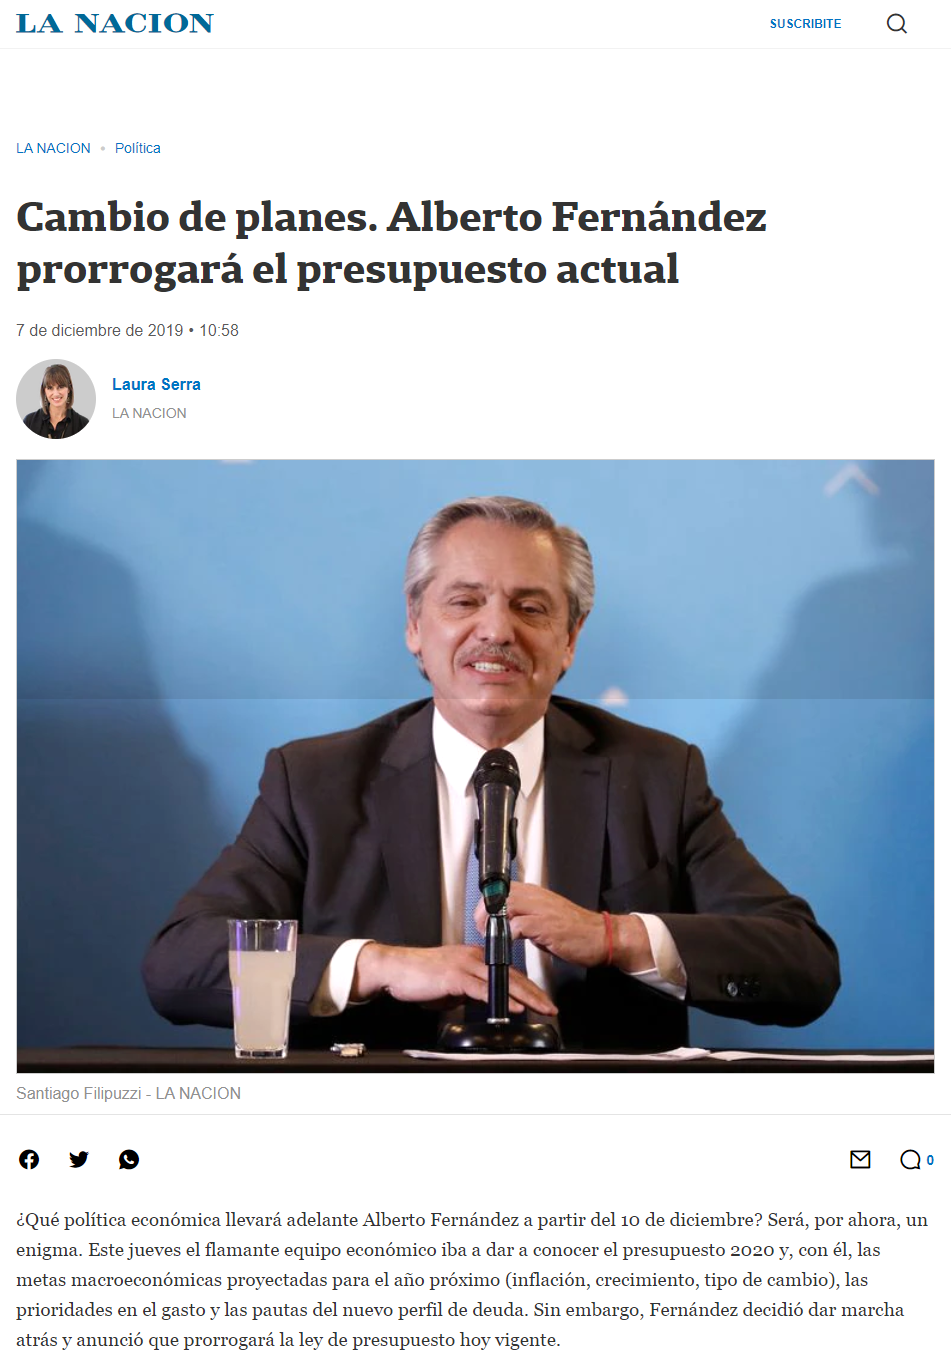 Imagen del diario La Nación